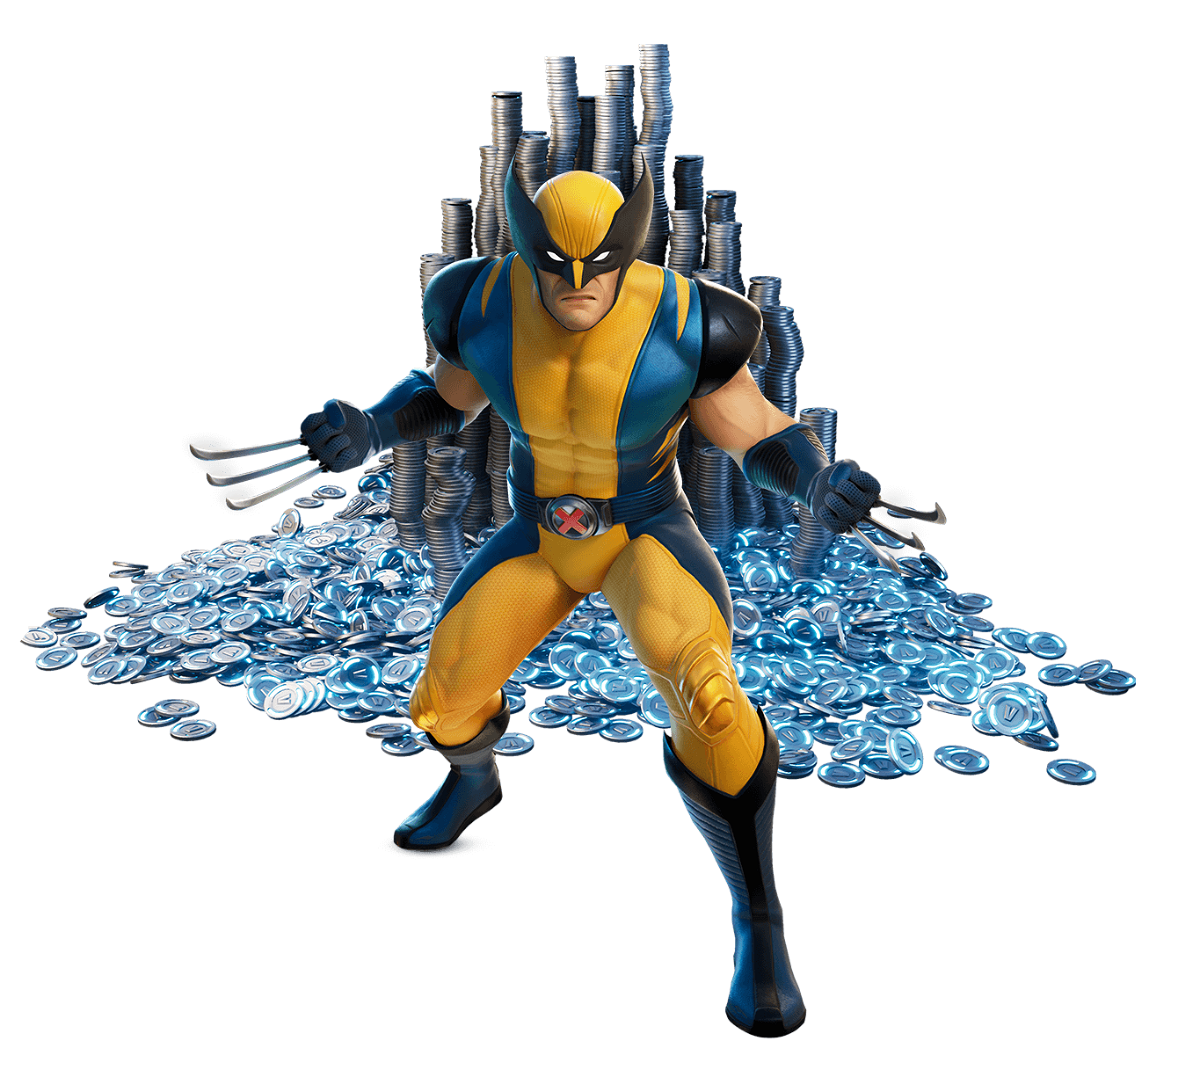 Immagine promozionale del costume di Wolverine utilizzabile in Fortnite